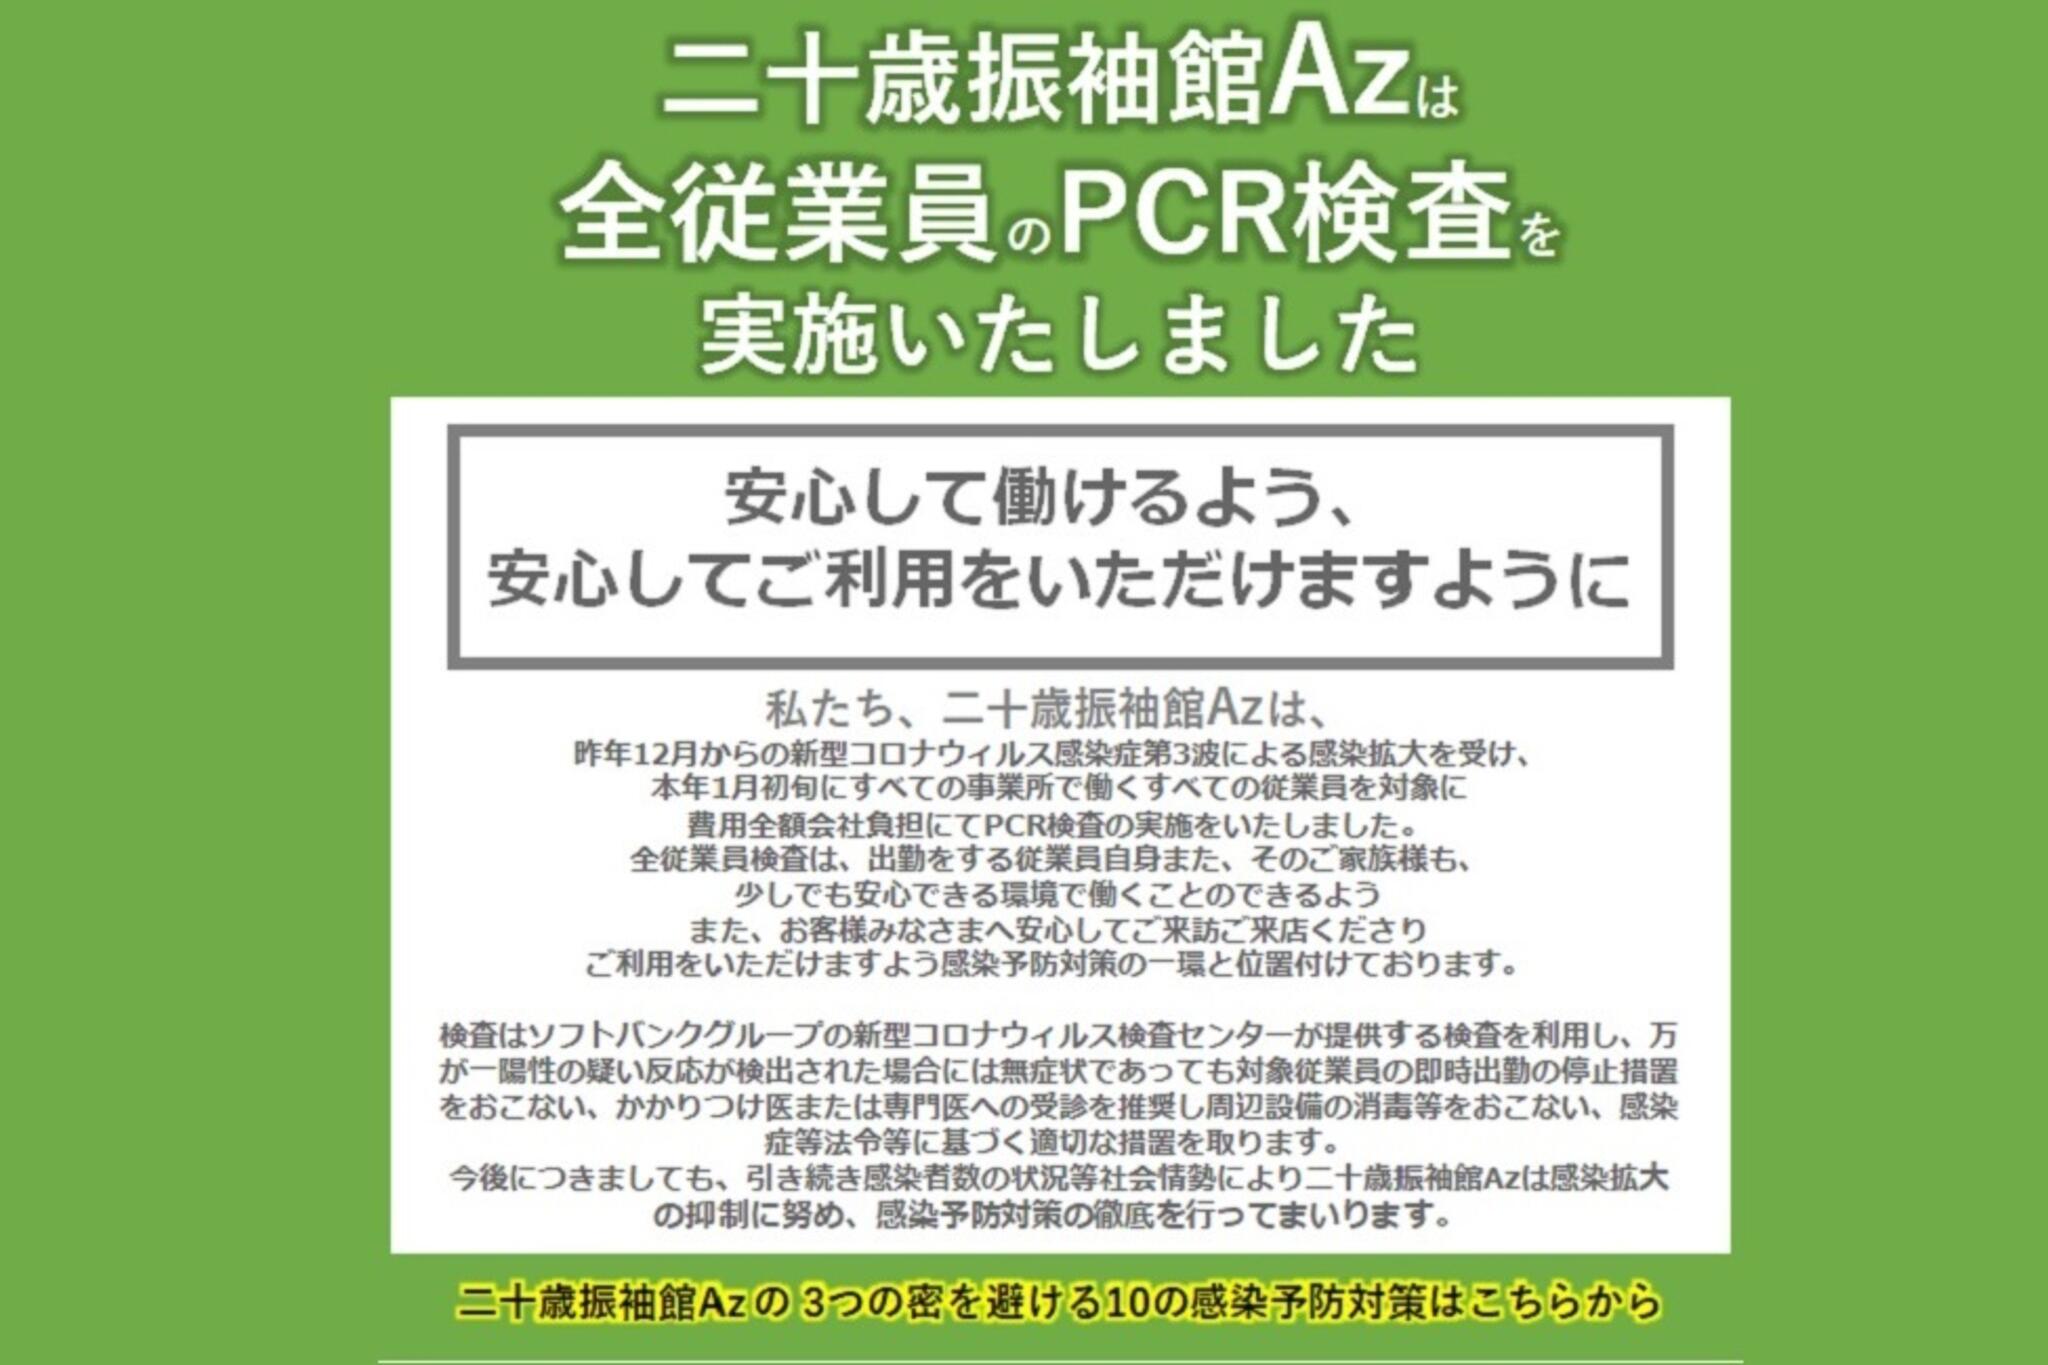 二十歳振袖館Az 龍ケ崎店からのお知らせ(全従業員にPCR検査の実施をいたしました。 安心して働けるよう、安心してご利用をいただけますように)に関する写真